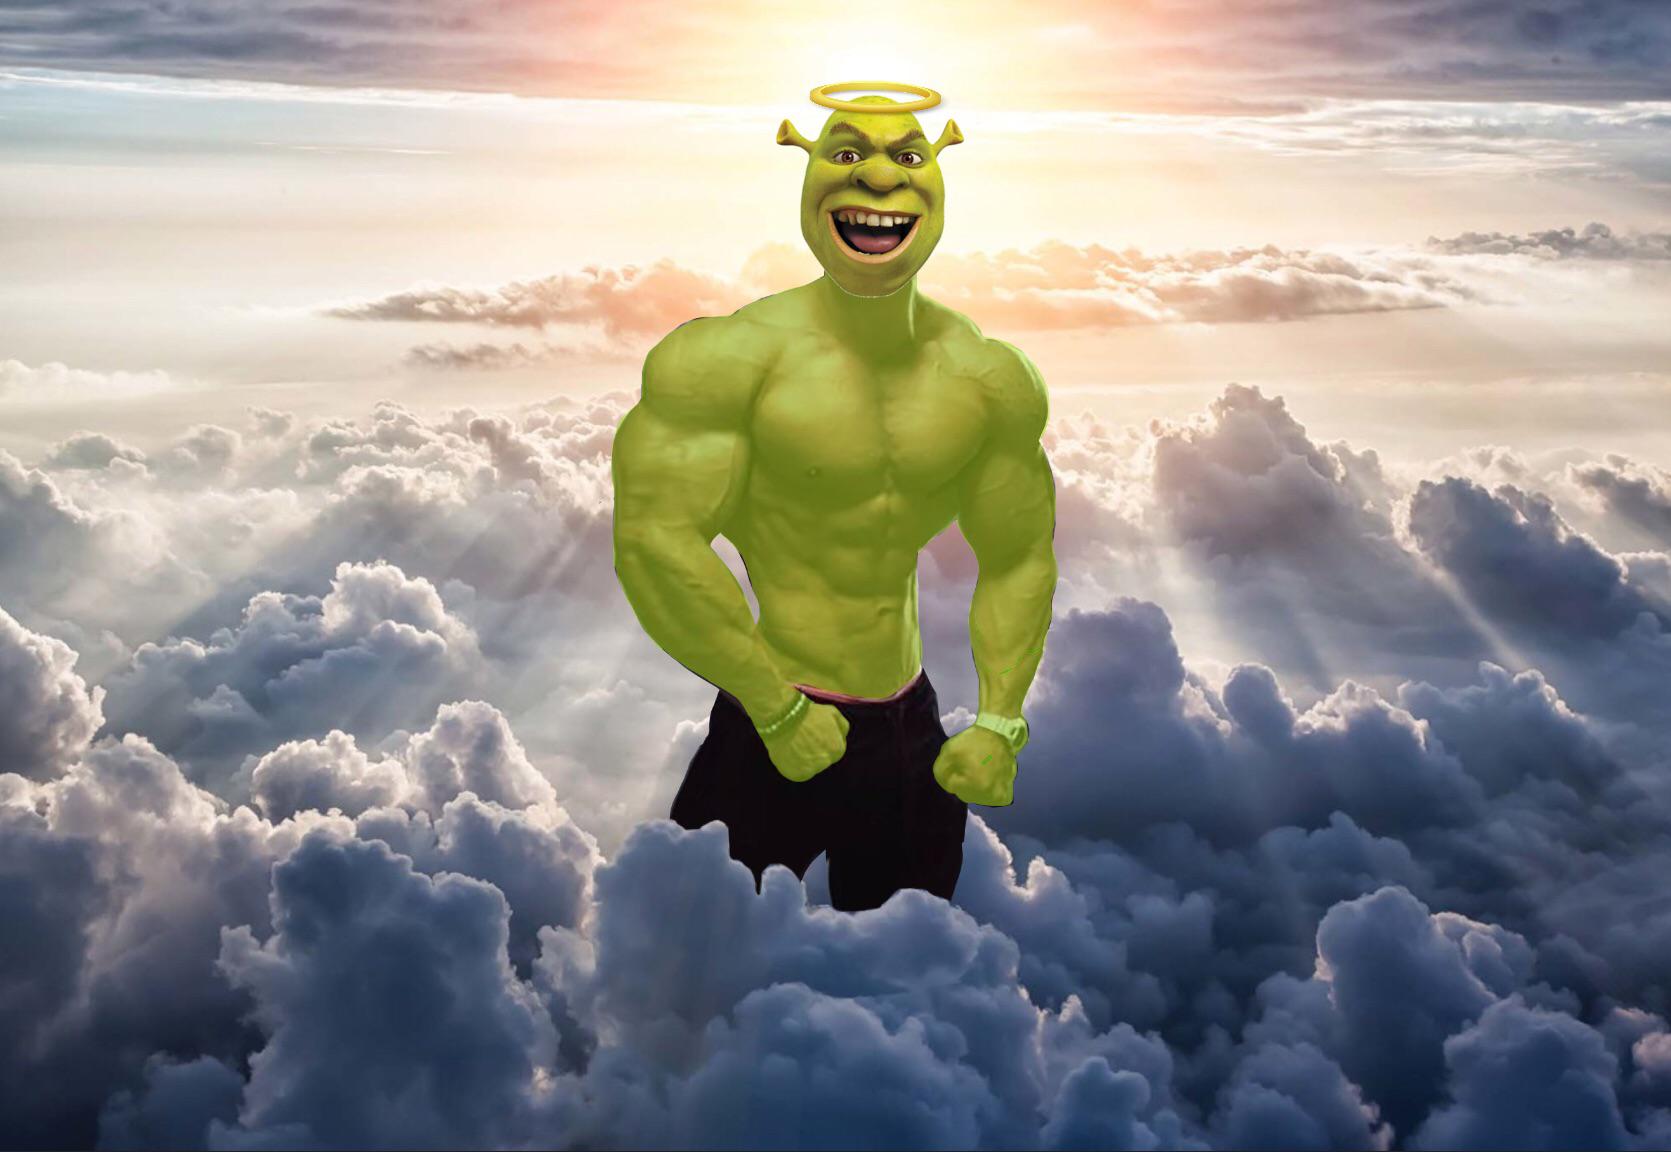 How Strong is Meme Shrek?